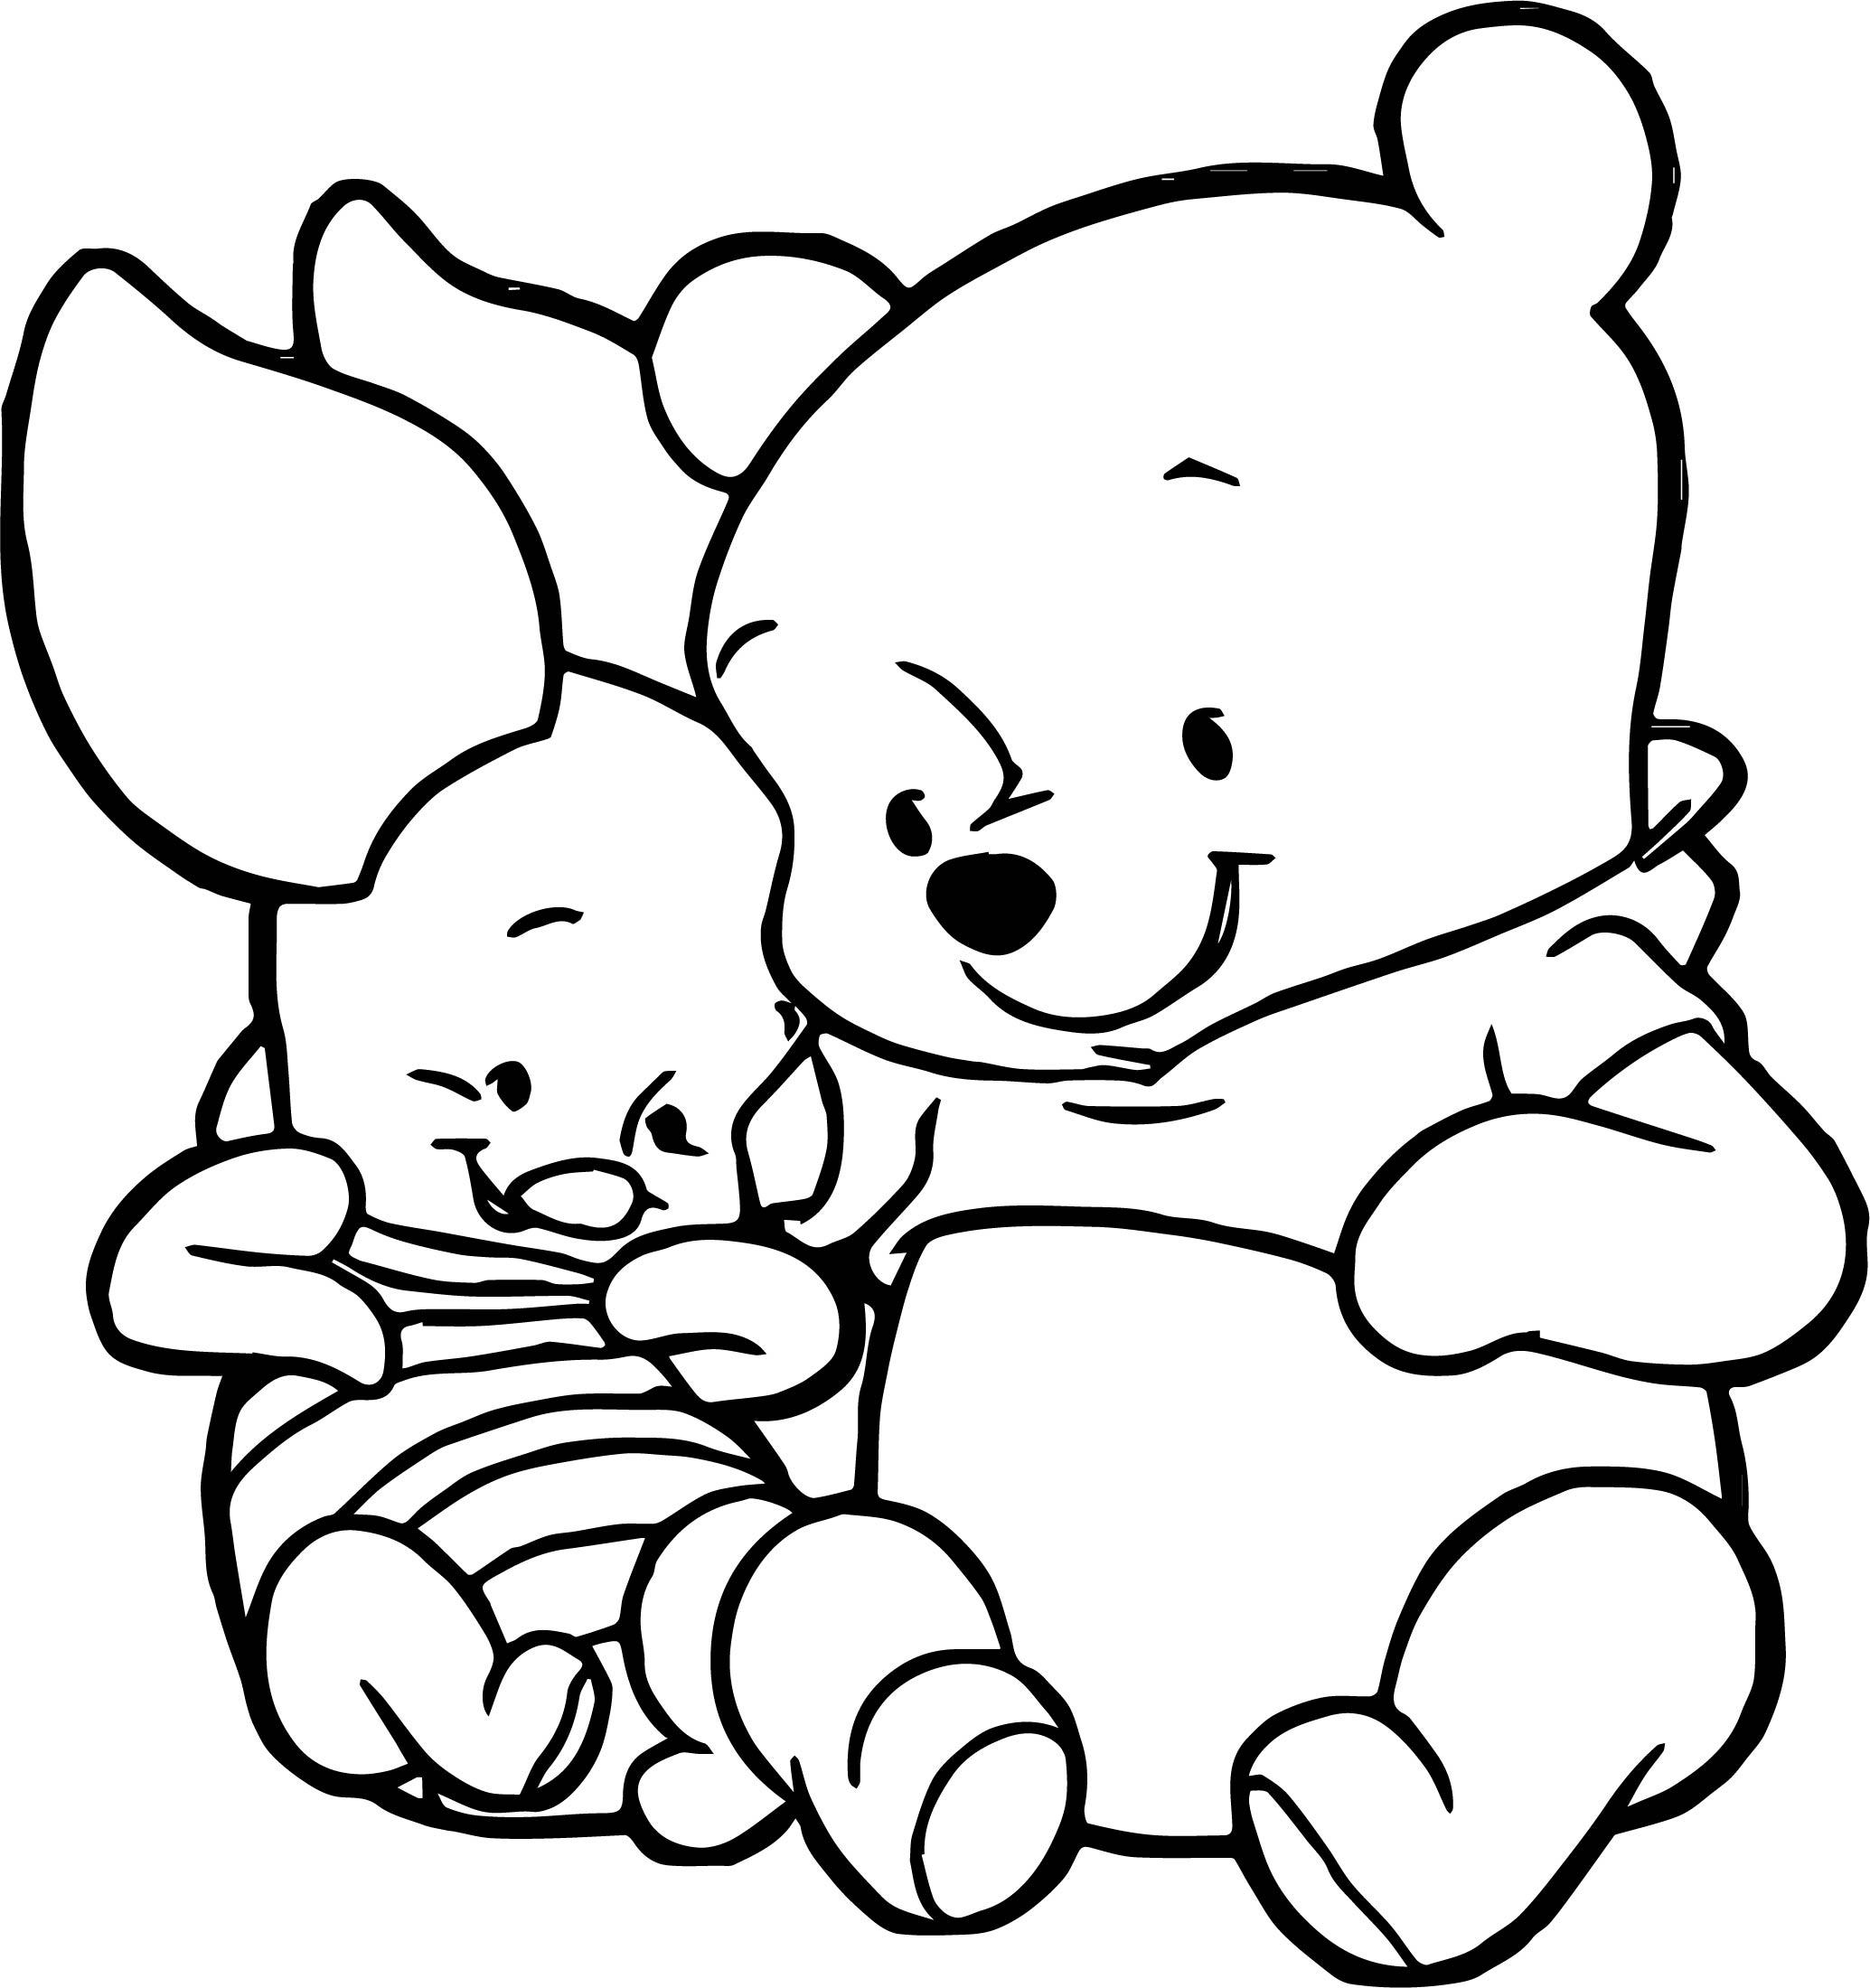 Colorear Winnie Pooh En Linea Dibujos De Winnie Pooh Bebe Para